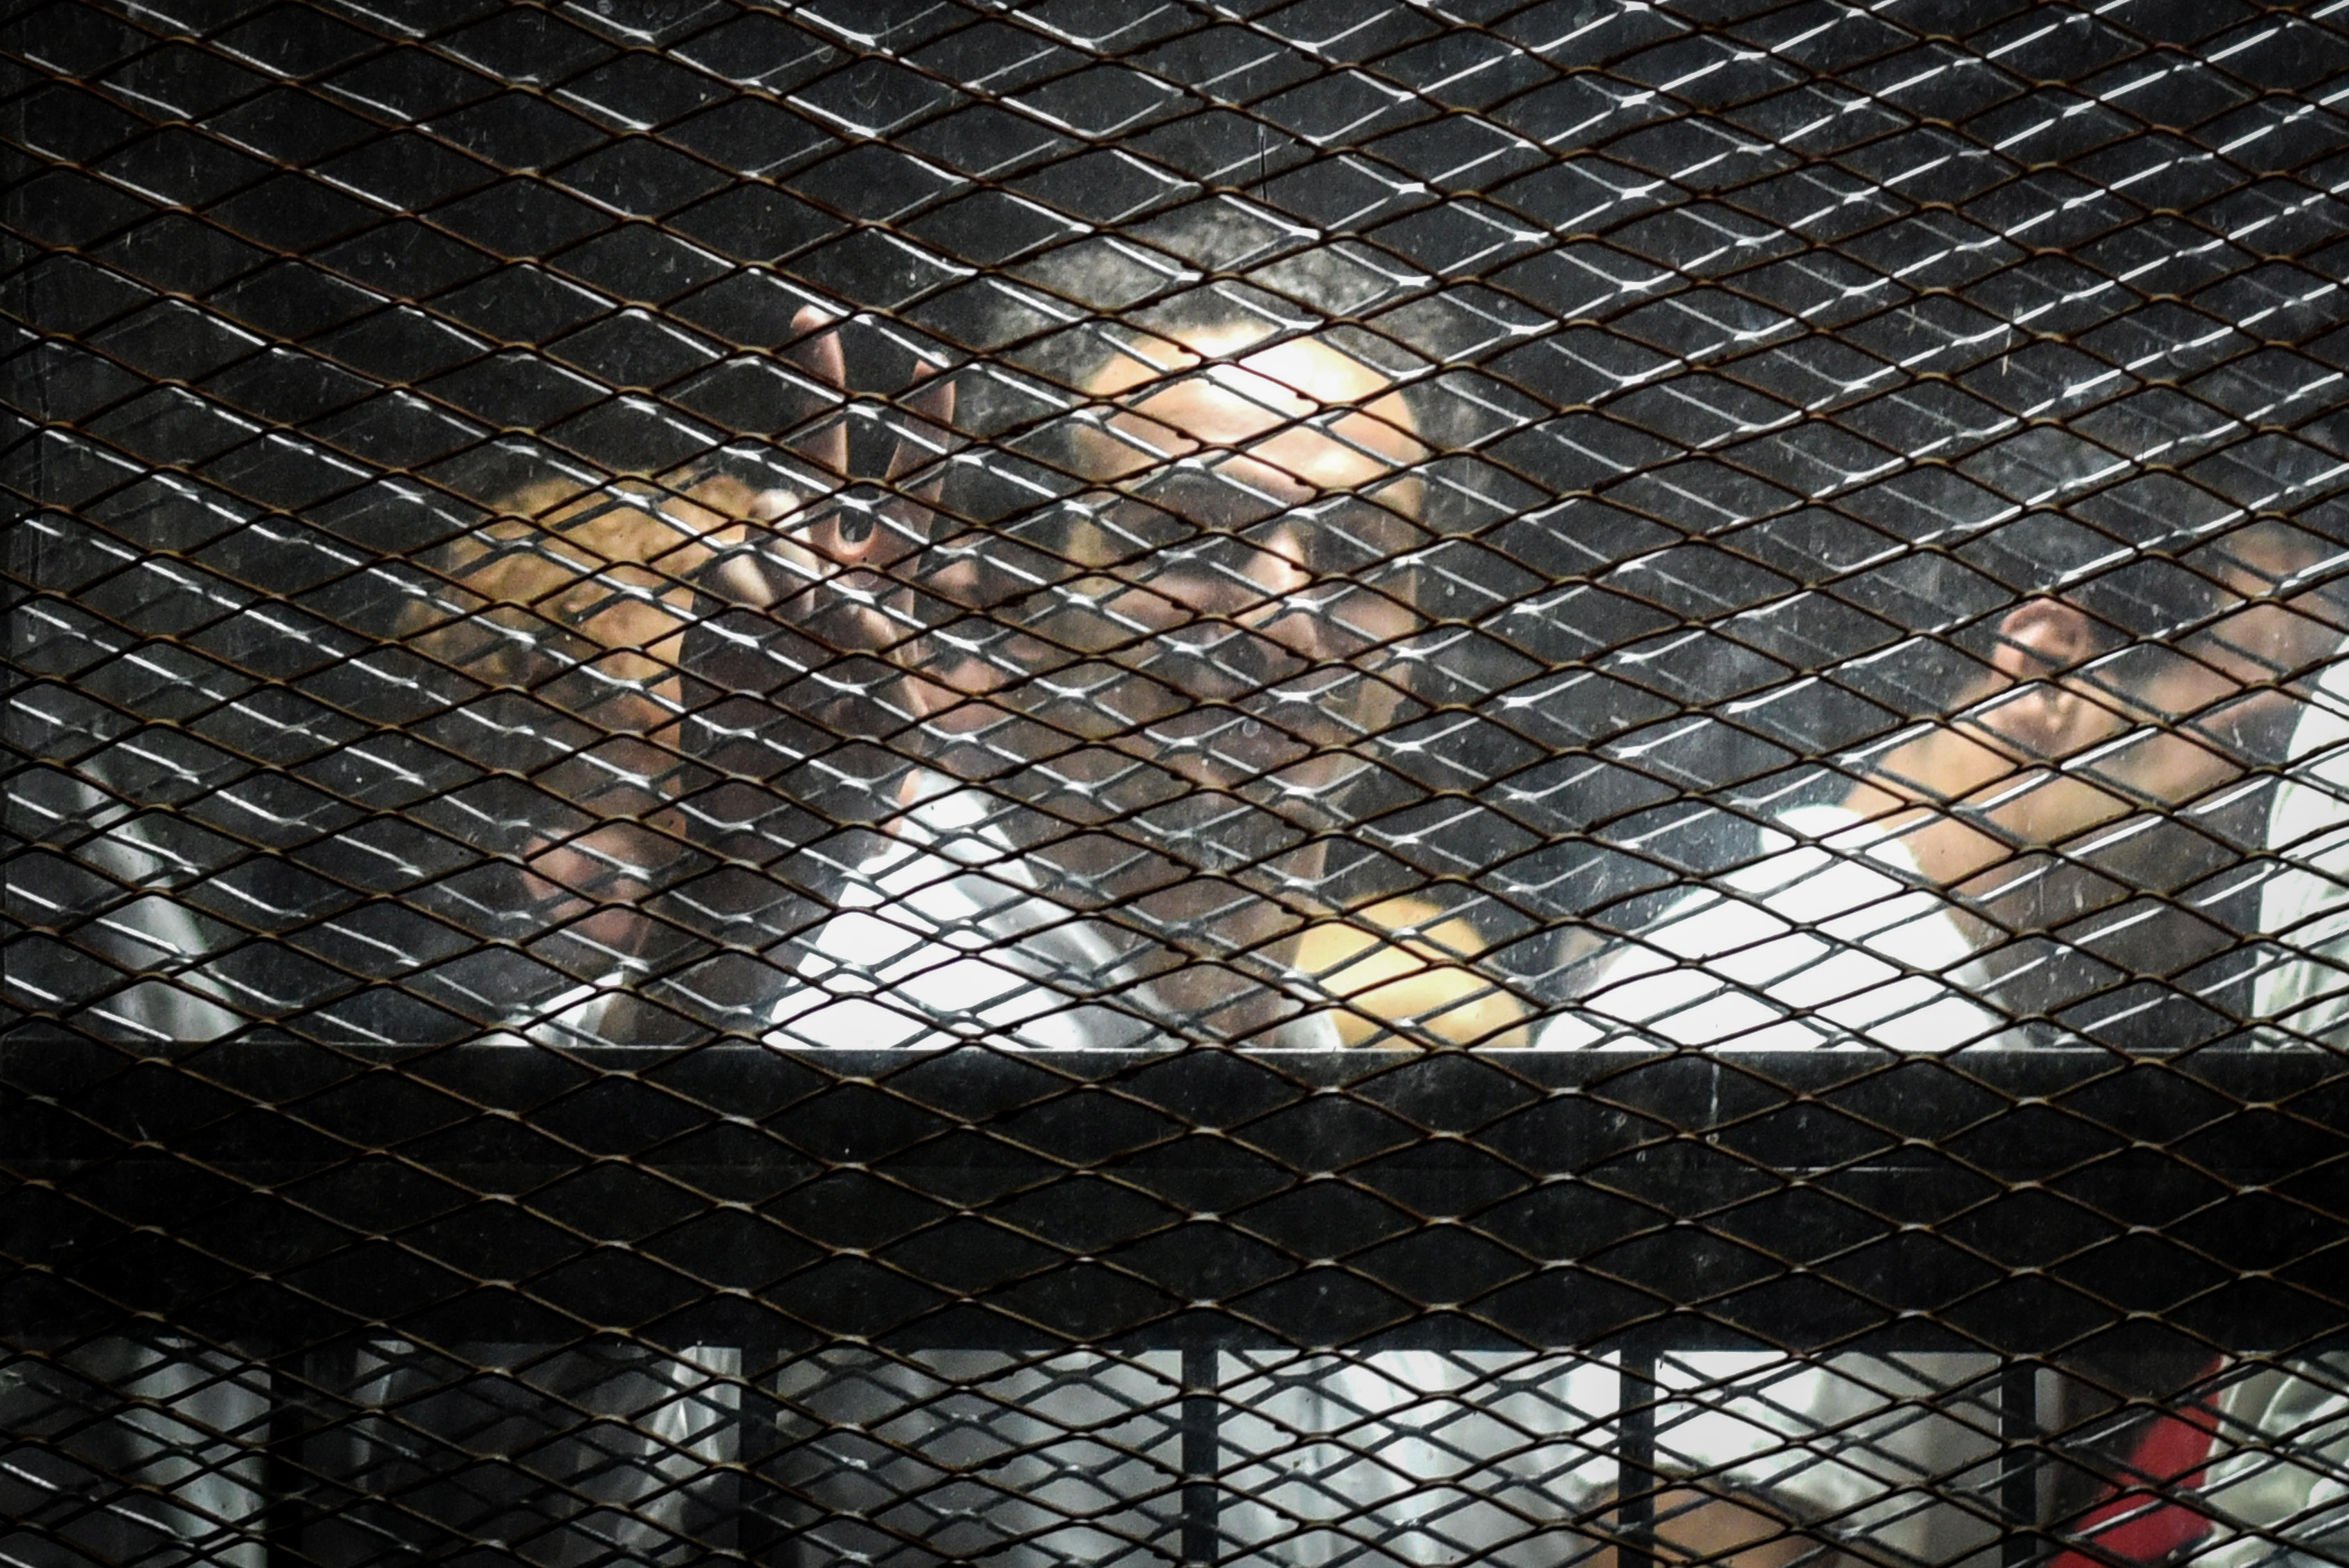 75 embert ítéltek halálra a Muszlim Testvériség tagjai ellen folytatott óriásperben Egyiptomban